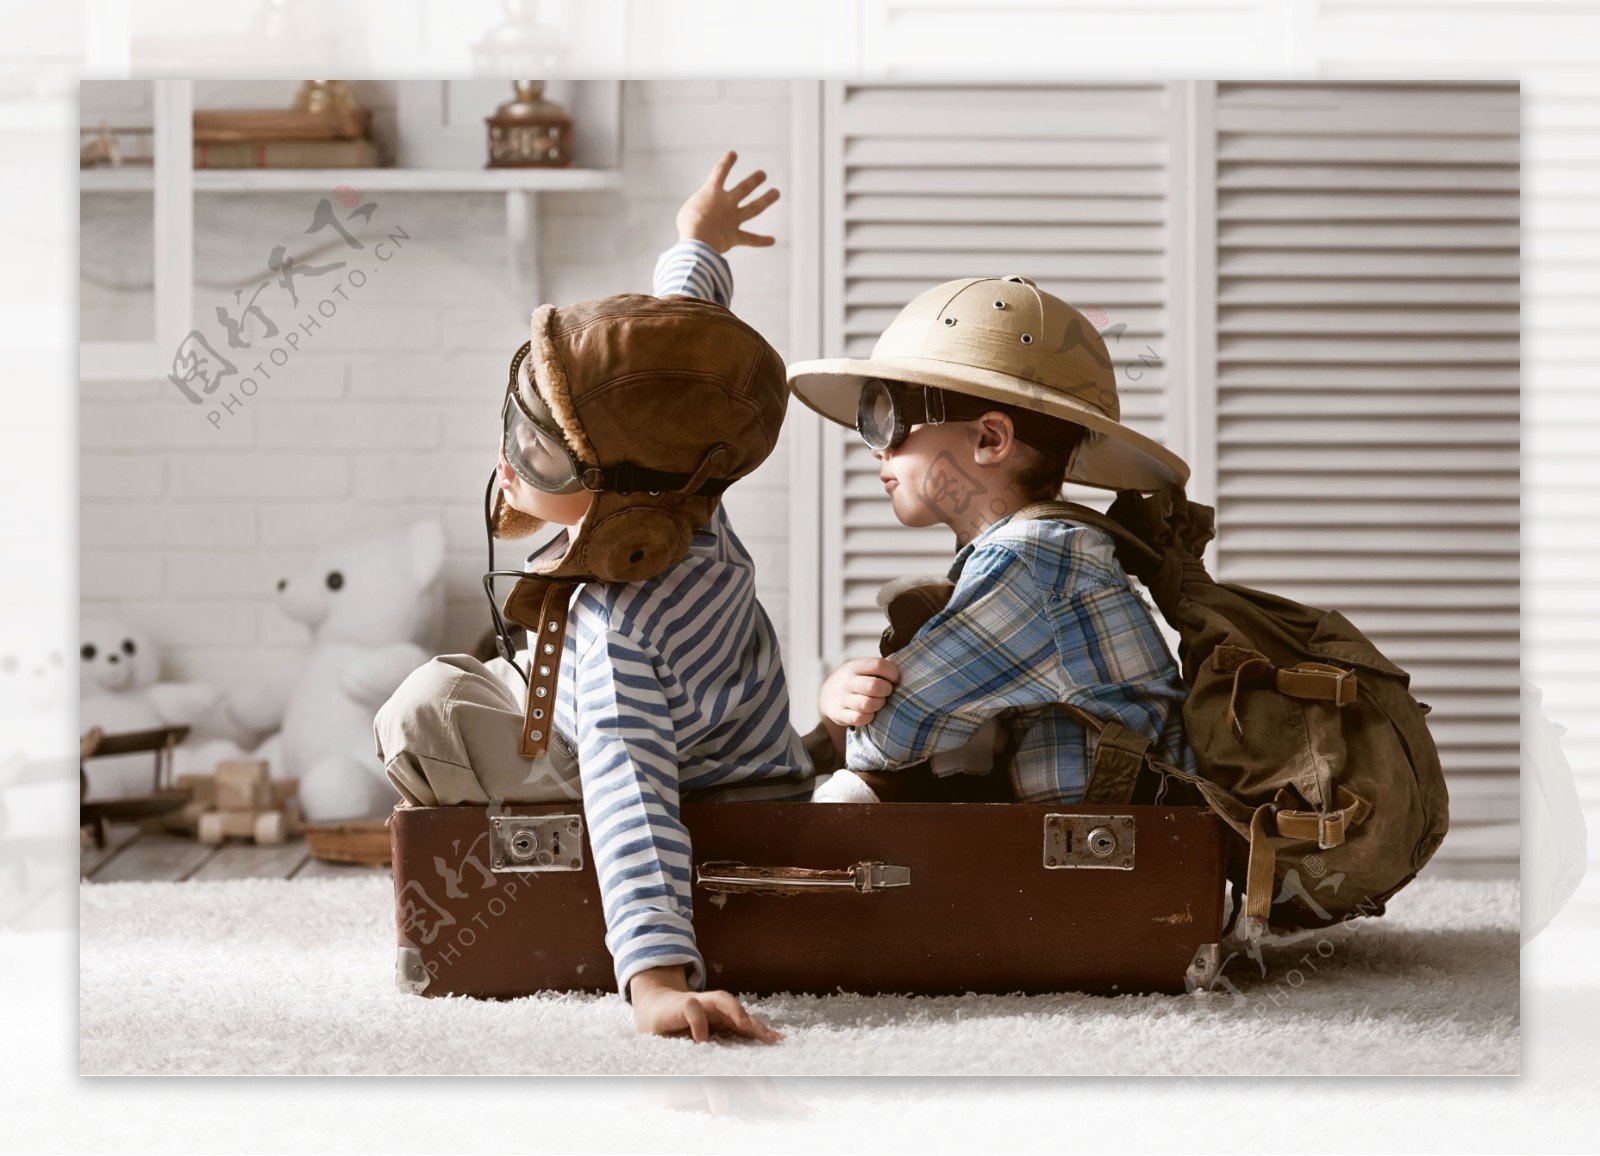 行李箱里开心玩耍的孩子图片